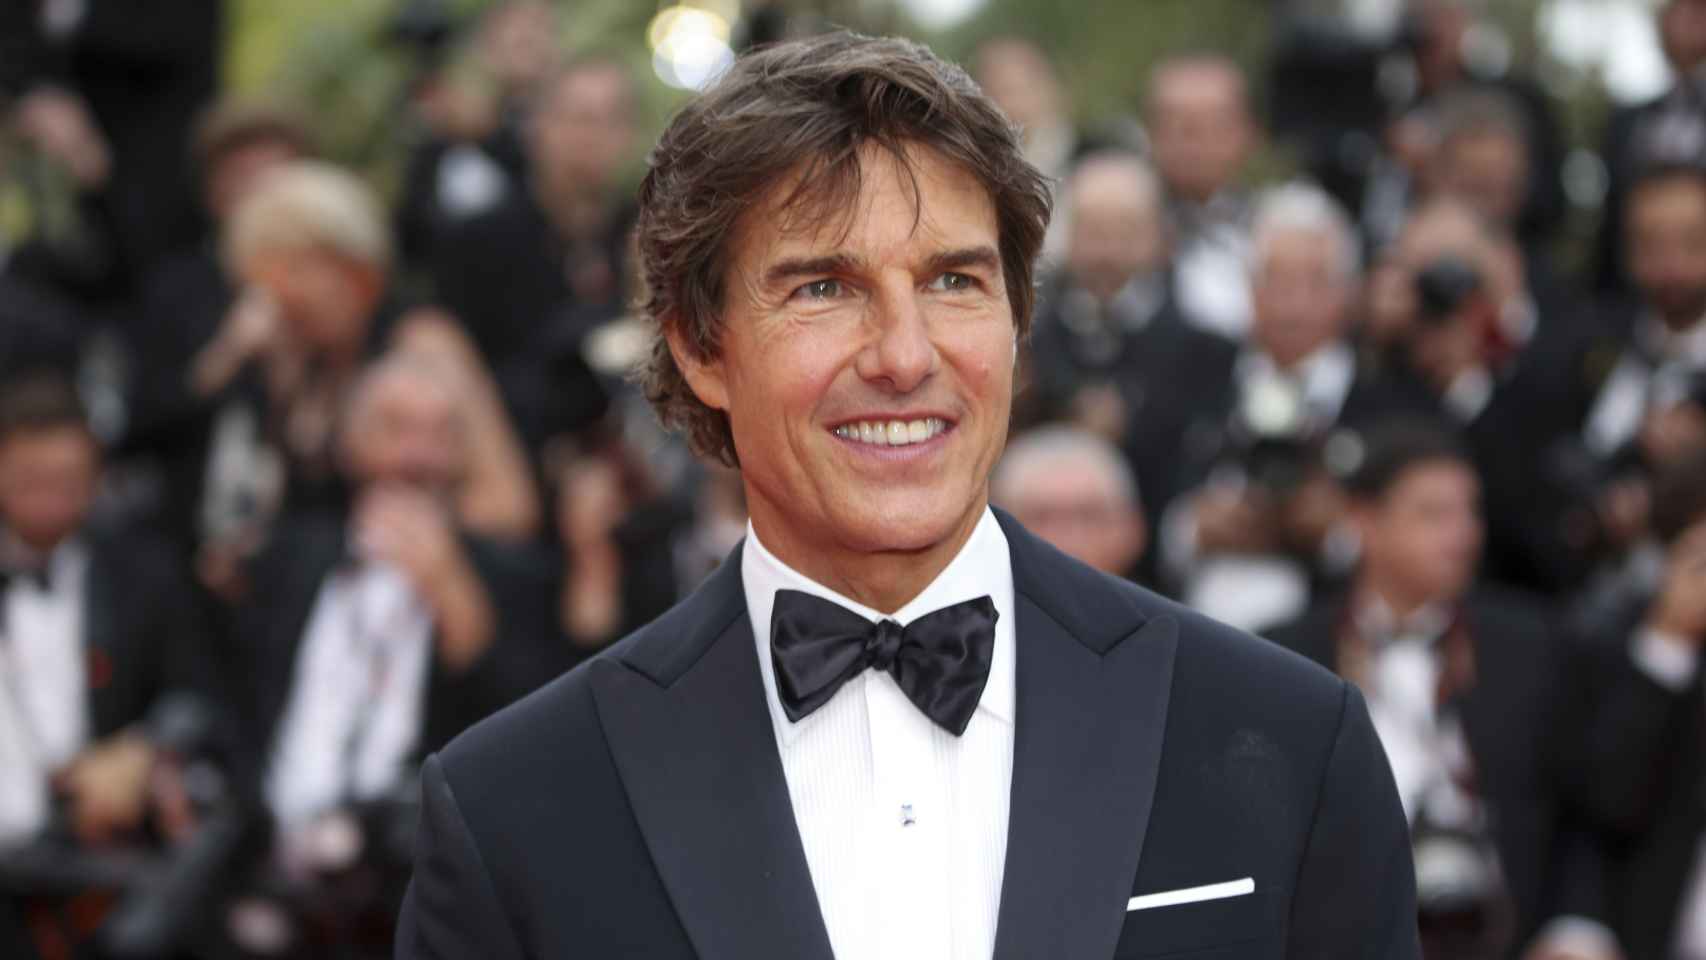 A unas semanas de cumplir 60 años, Tom Cruise luce un aspecto muy rejuvenecido.